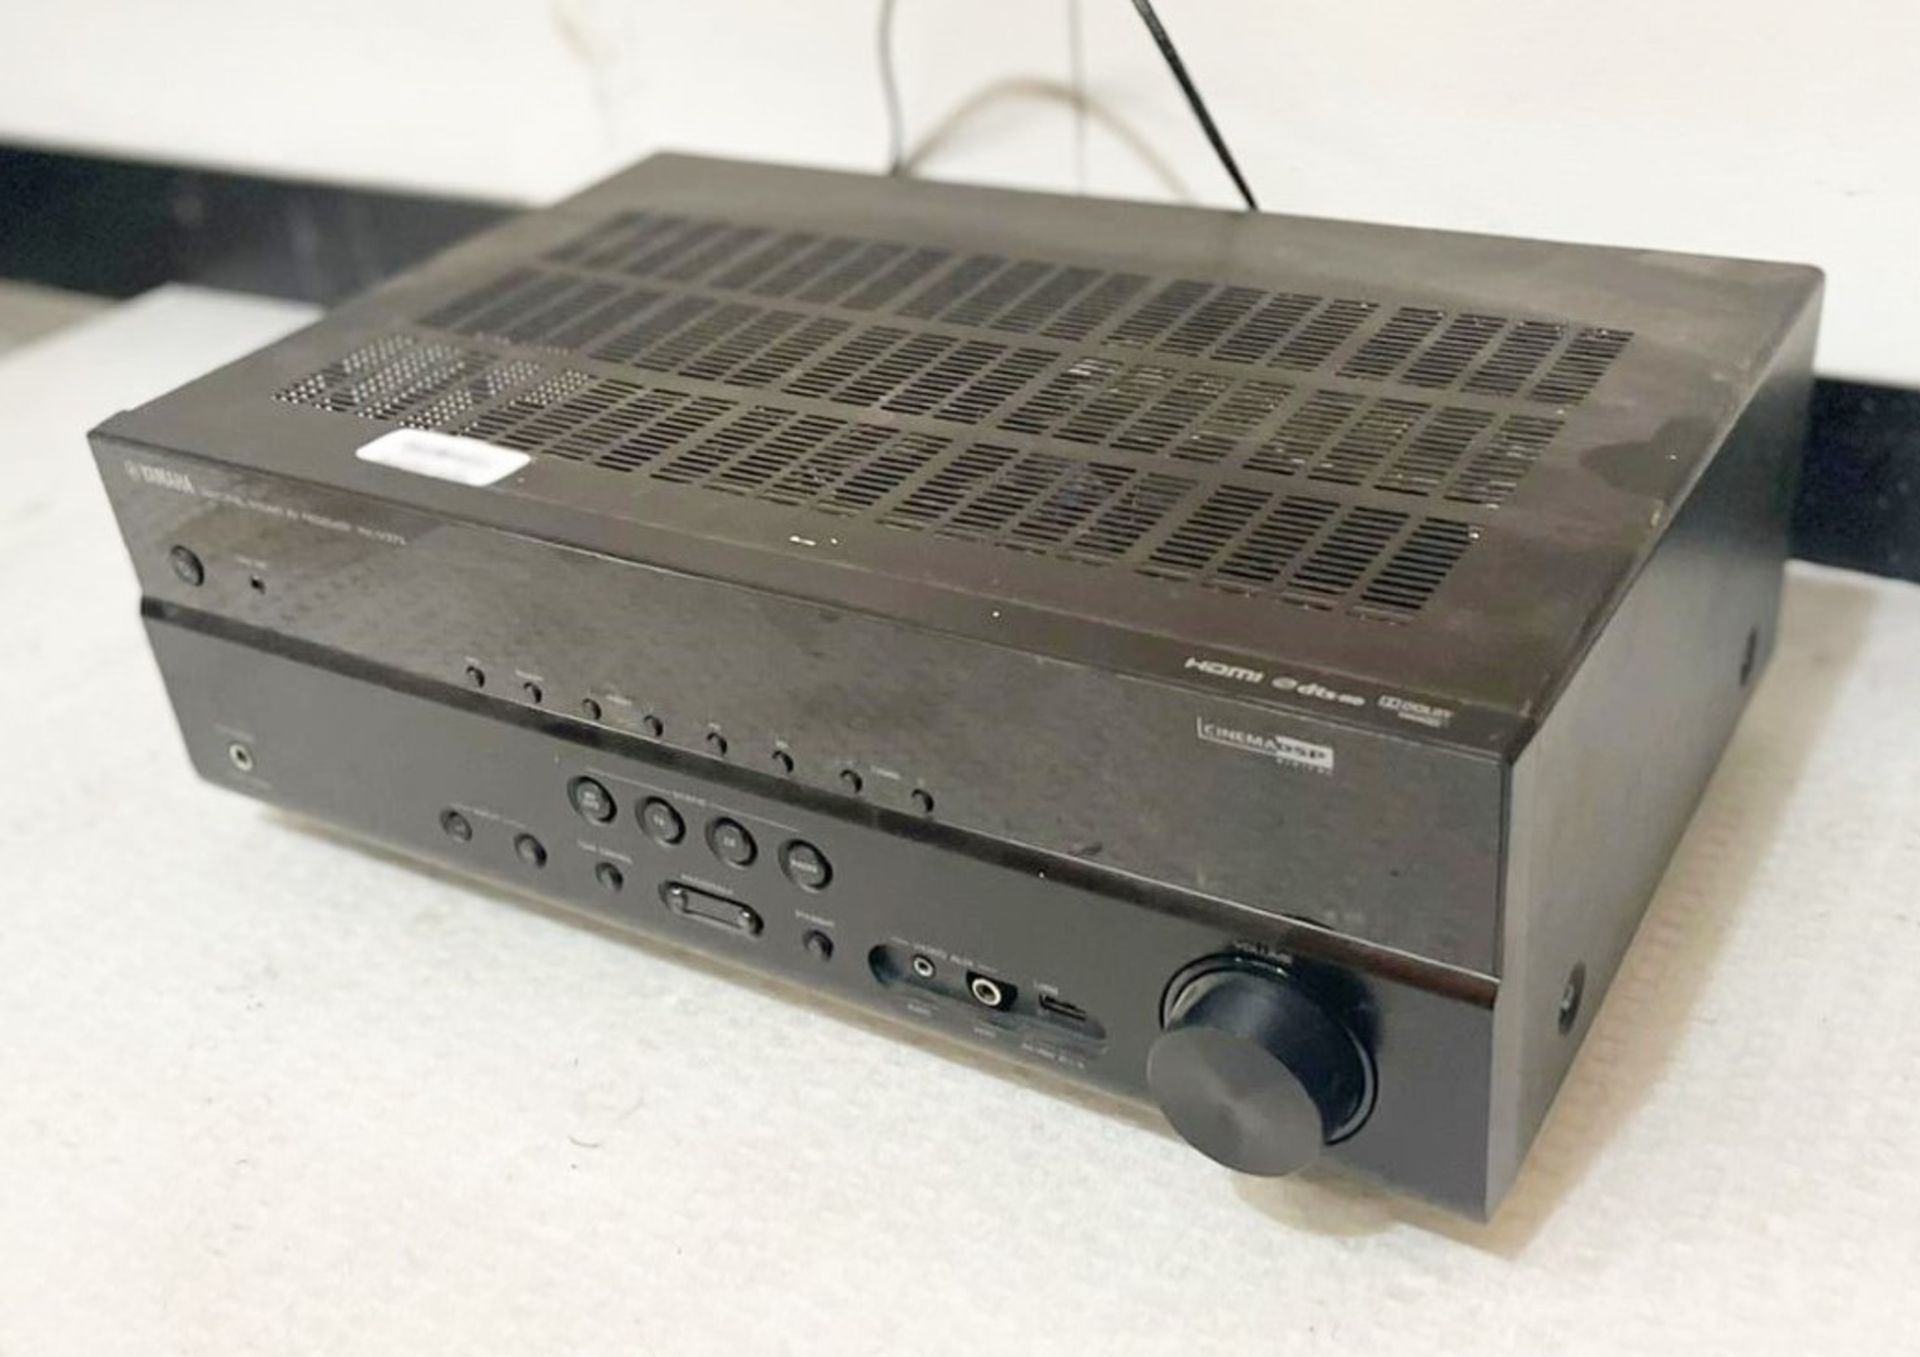 1 x Yamaha Natural Sound AV Reciever - Model RX-V3673 - Cinema DSP Digital - Original RRP: £700.00 -